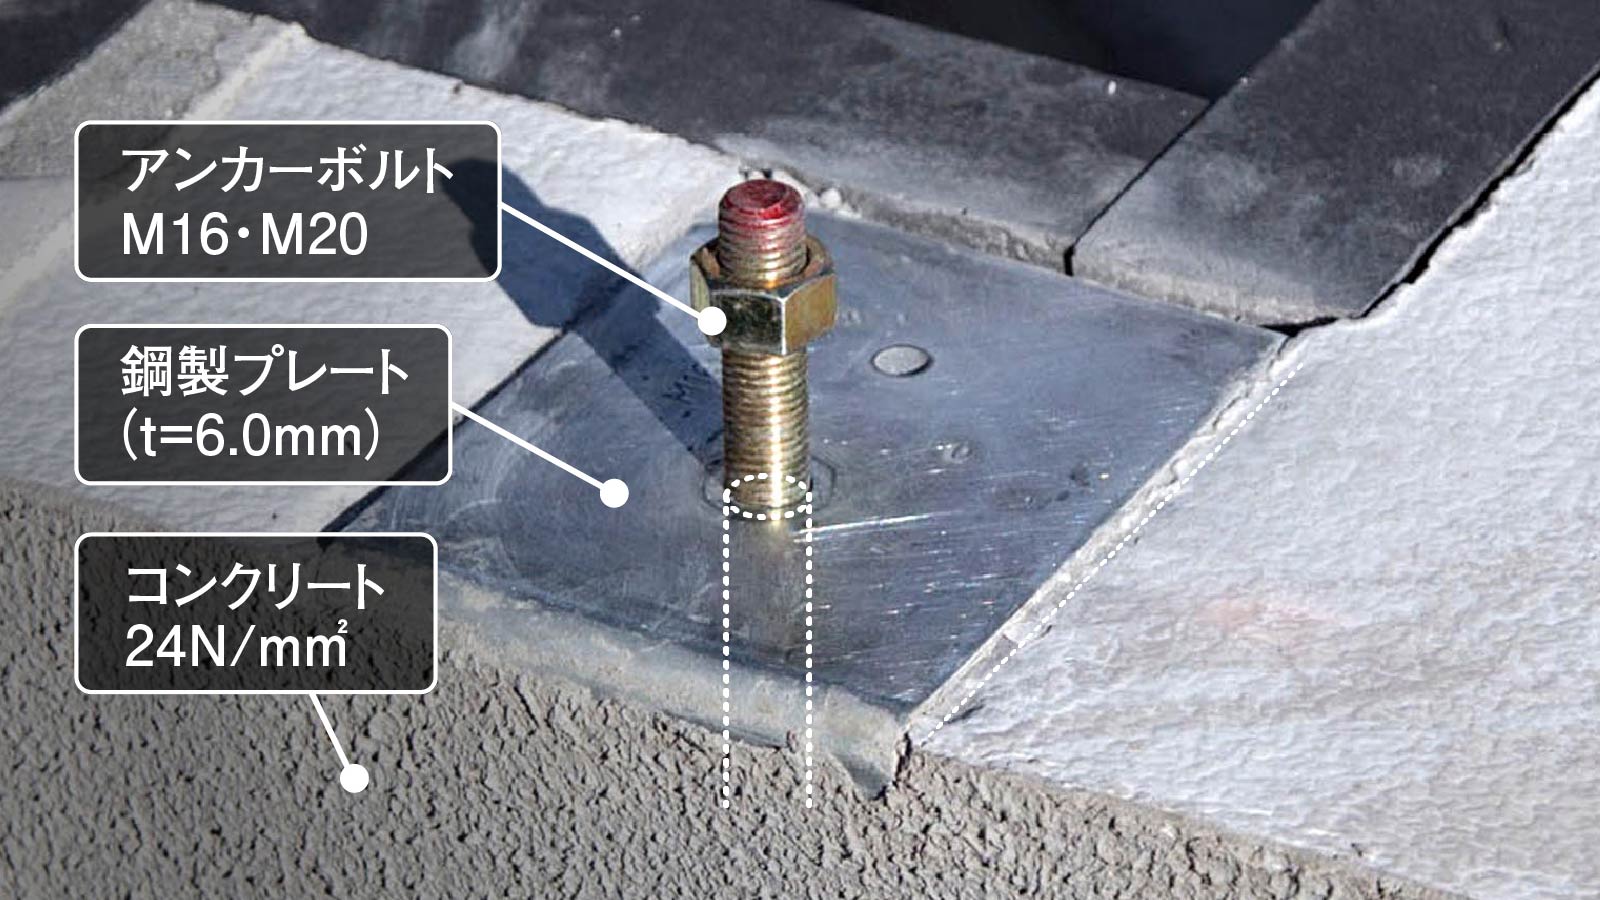 24N/mm2のコンクリートに、t=6.0mmの鋼製プレートを敷いたうえで16mmまたは20mmのアンカーボルトで緊結